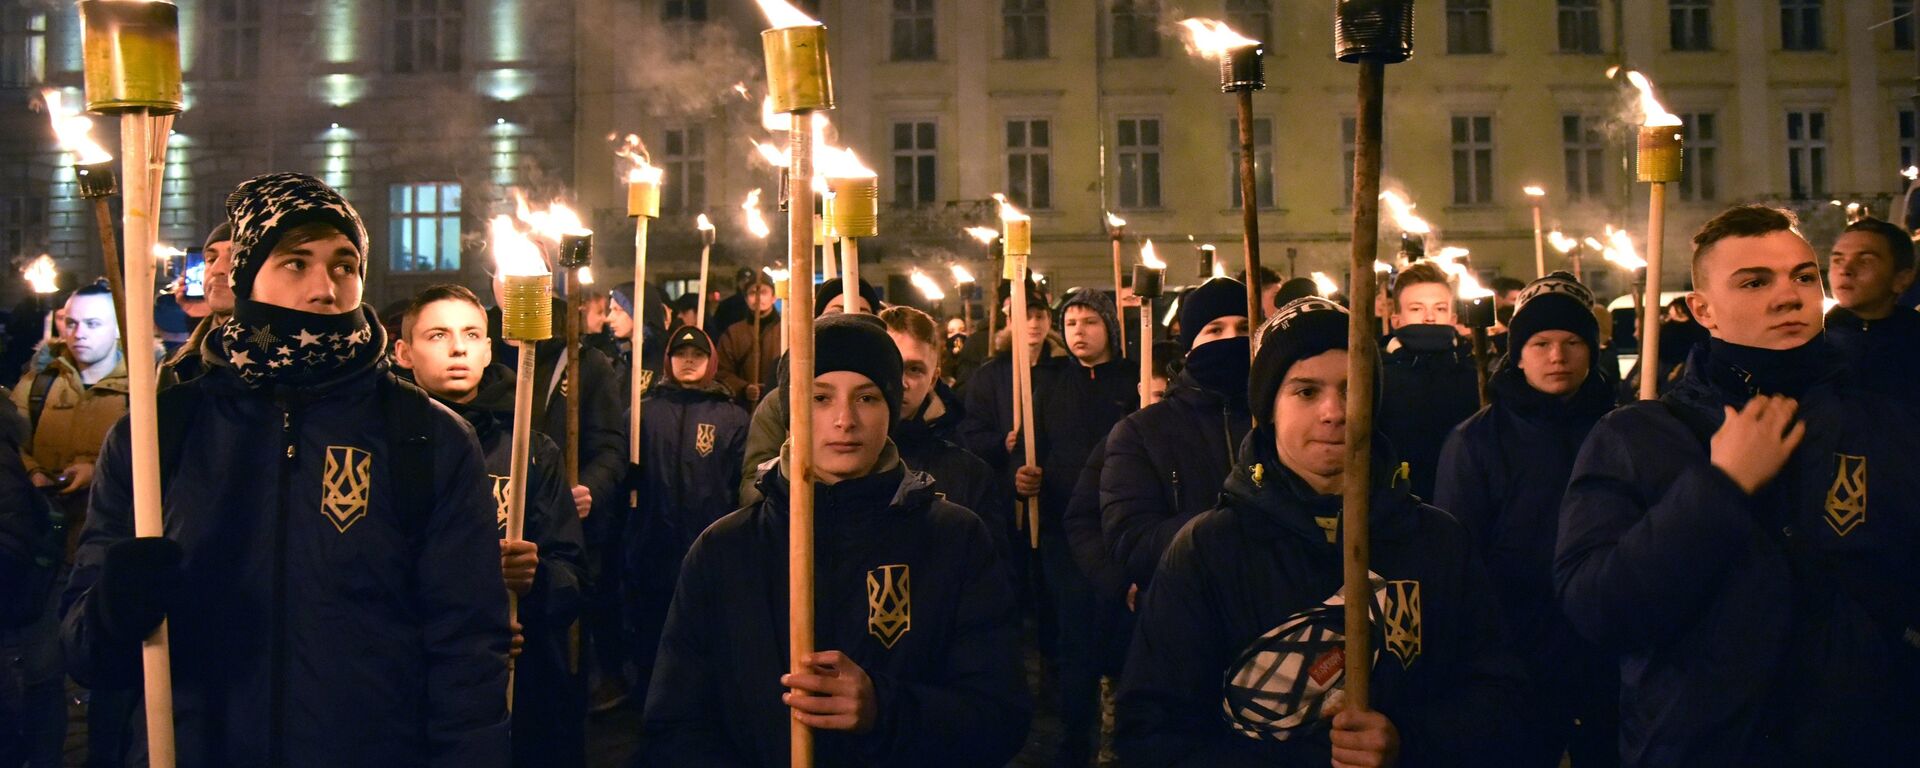 Ukraynalılar, Nazi işbirlikçisi Bandera'yı anmak için sokağa çıktı - Sputnik Türkiye, 1920, 01.01.2022